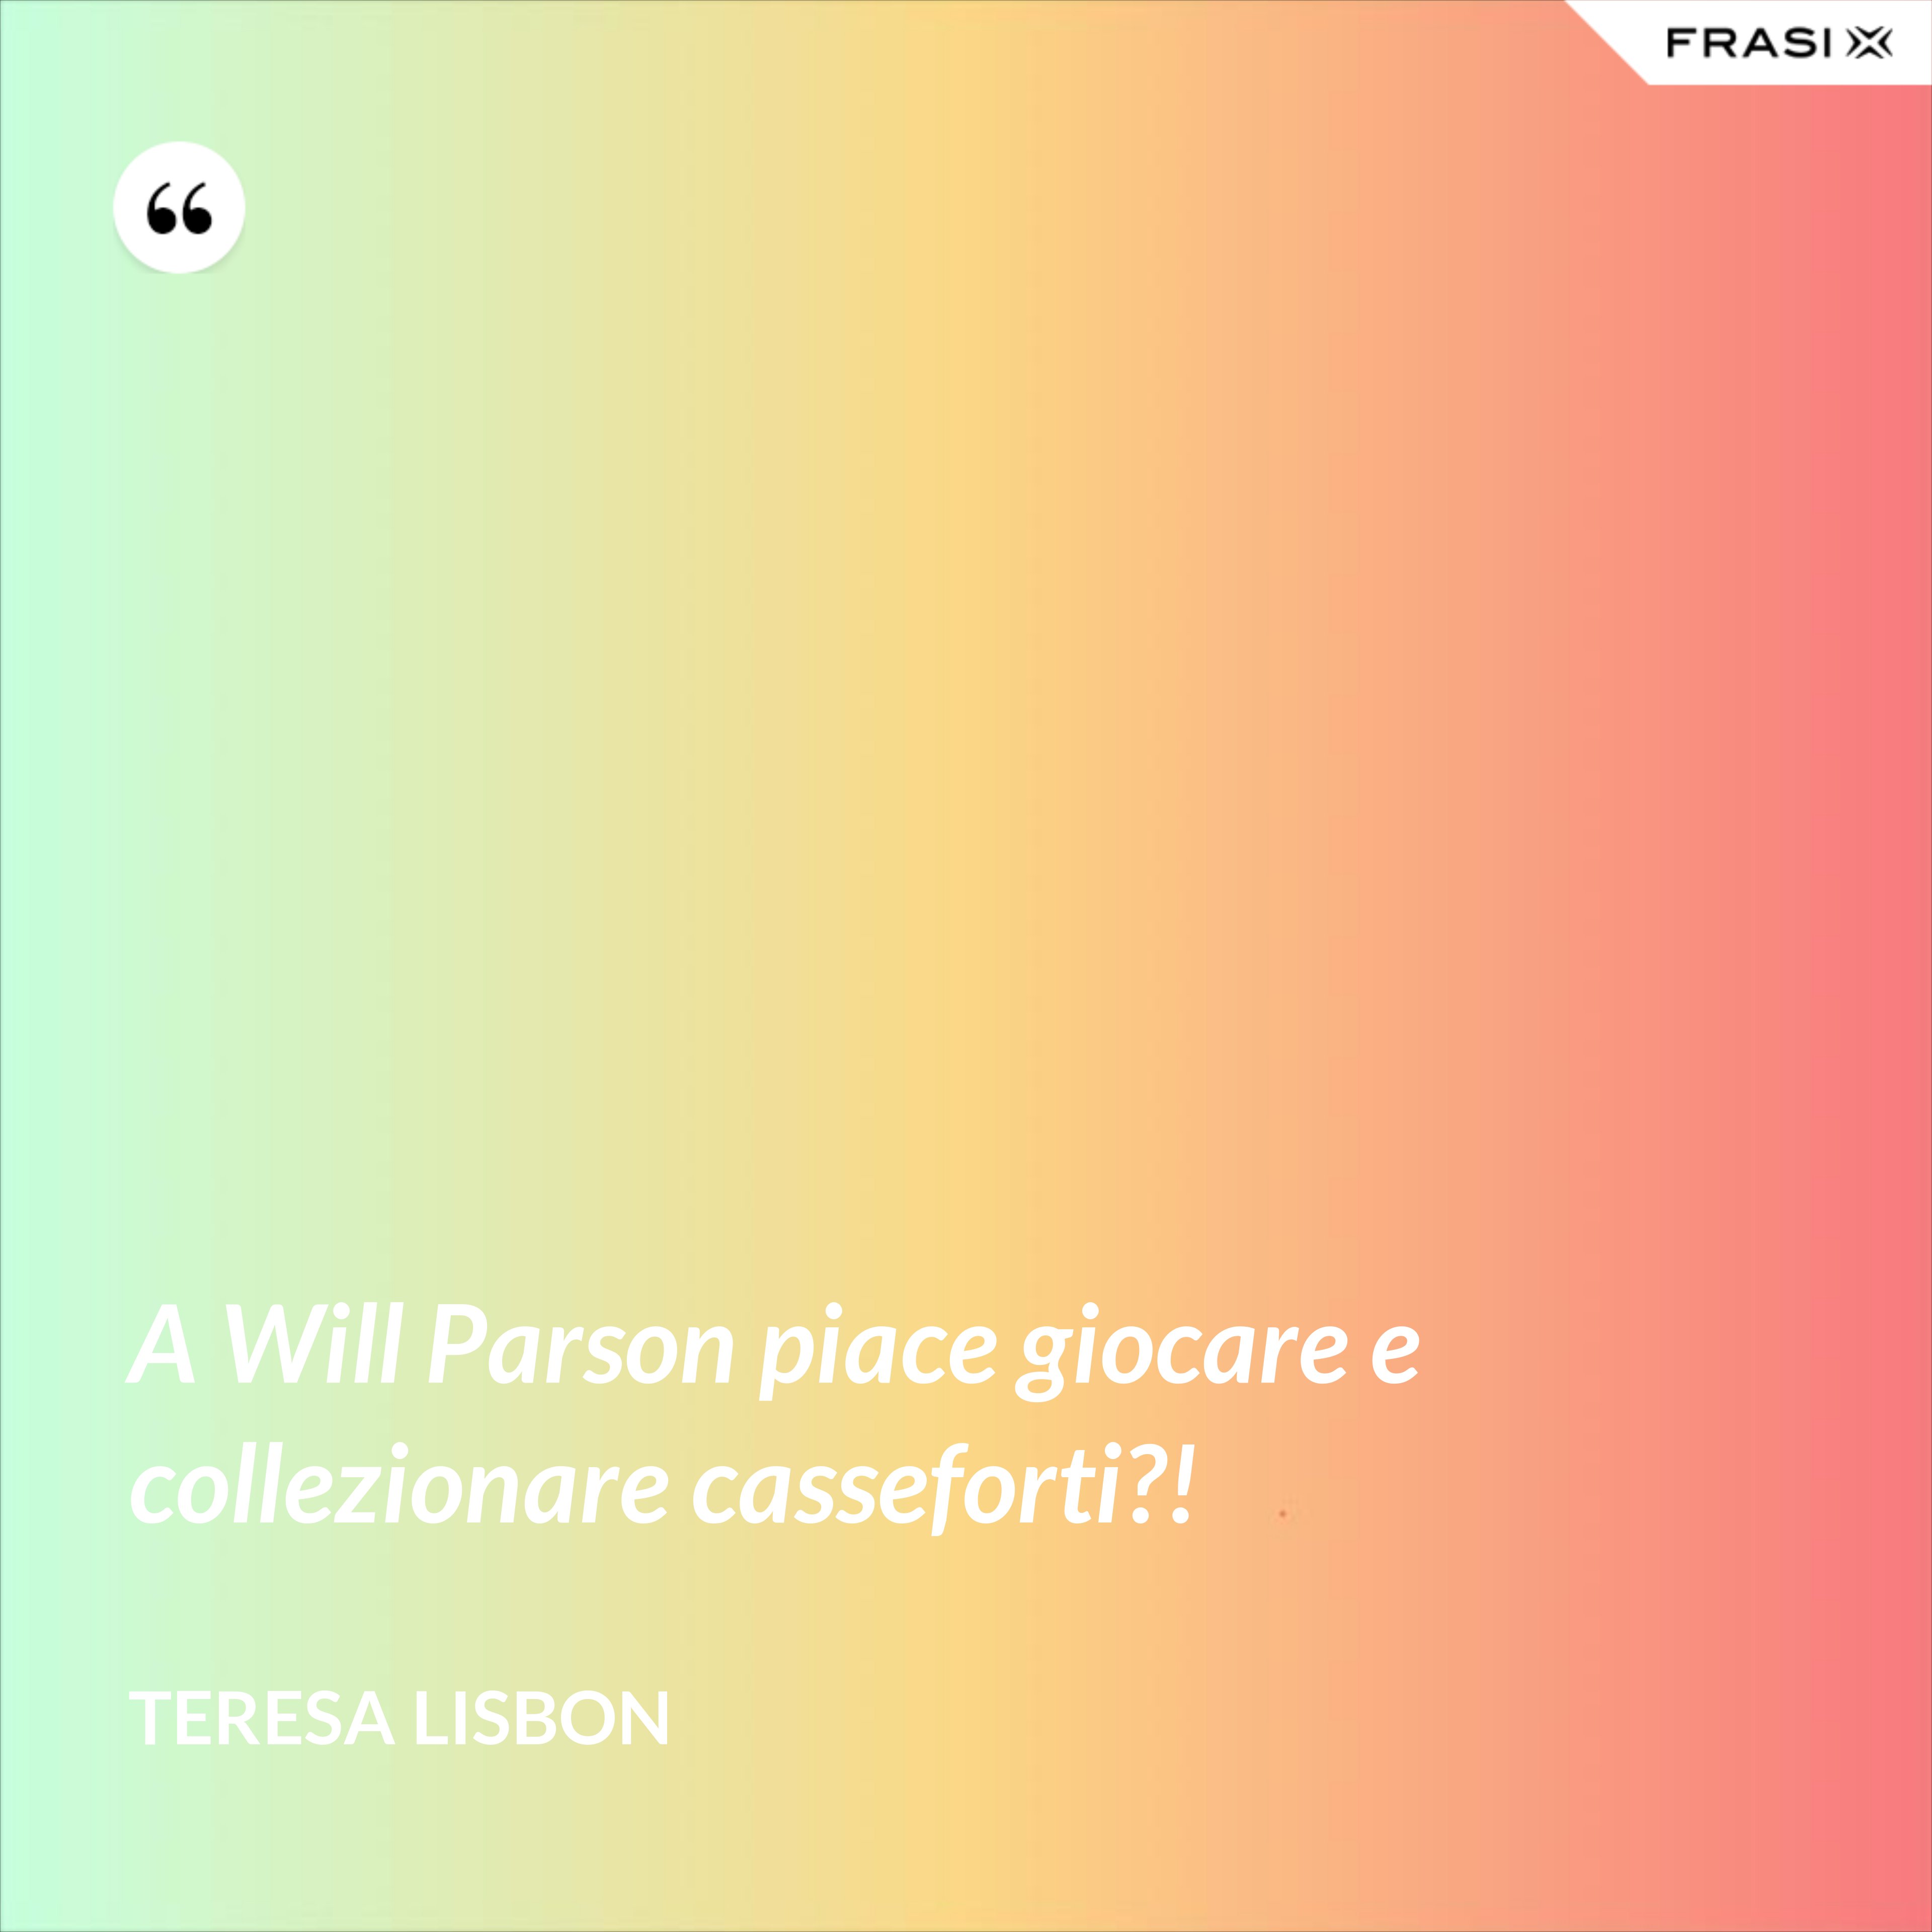 A Will Parson piace giocare e collezionare casseforti?! - Teresa Lisbon